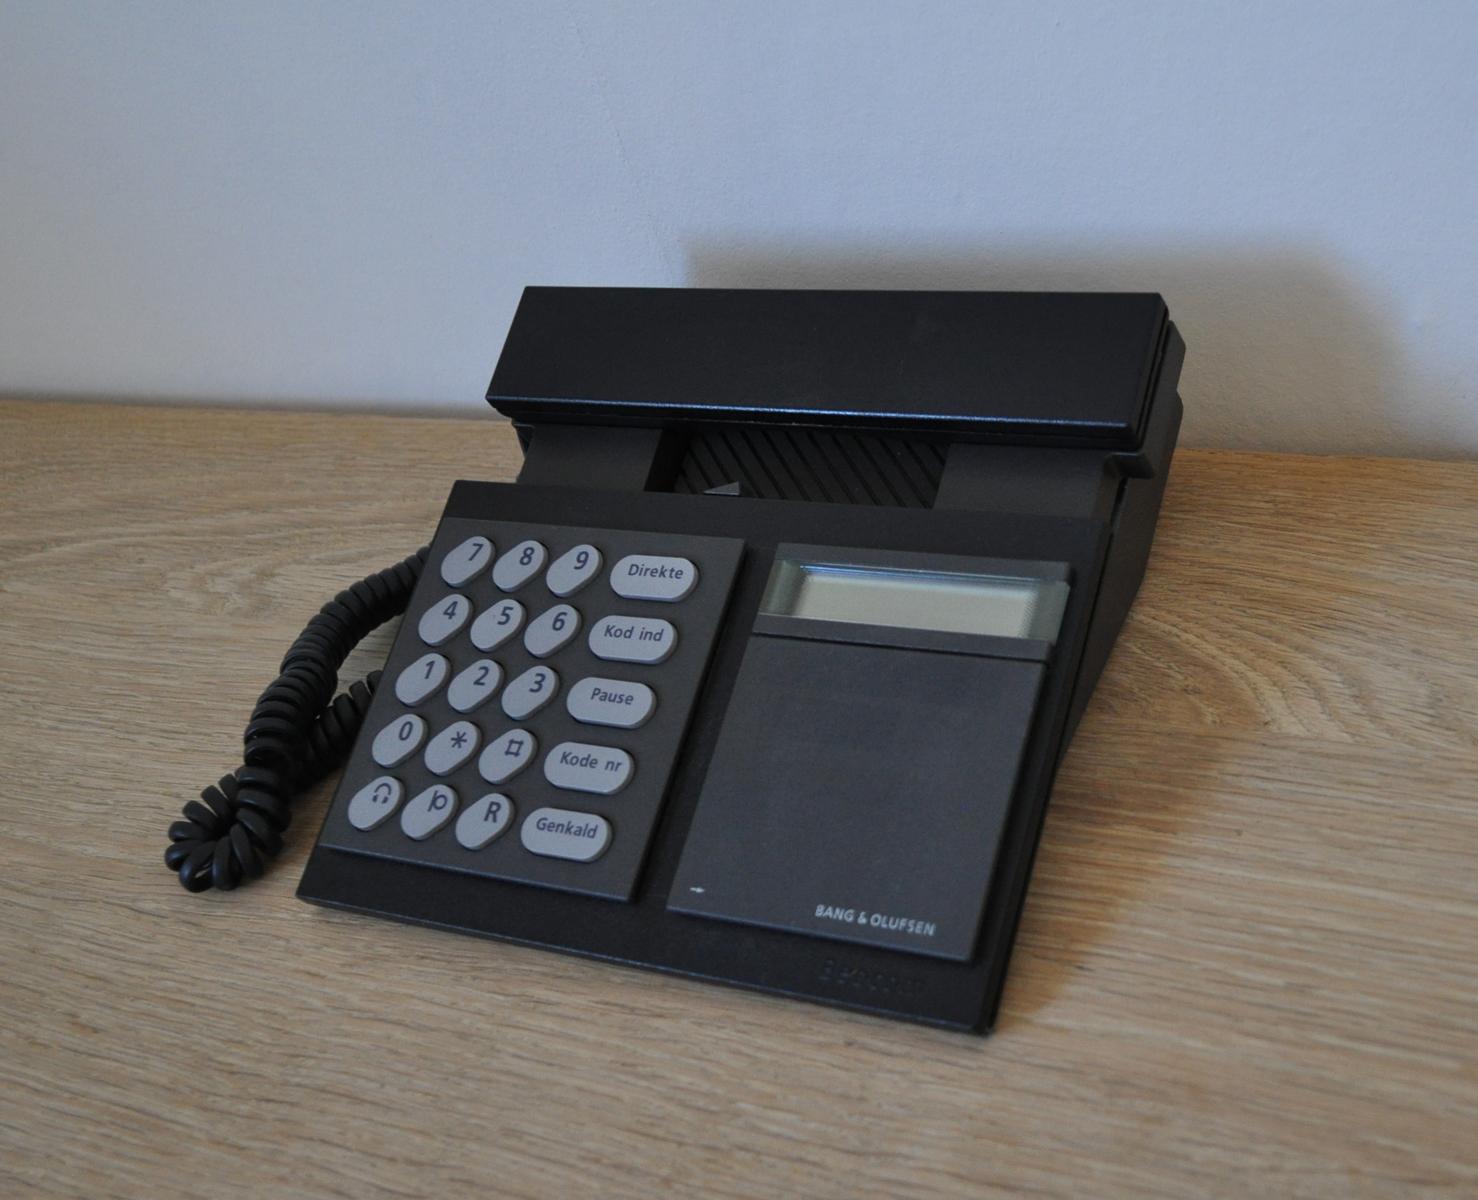 Beocom 2000 Telefon von 1986 von Bang & Olusfen.
Vollständig funktionsfähig.

Geschichte: 